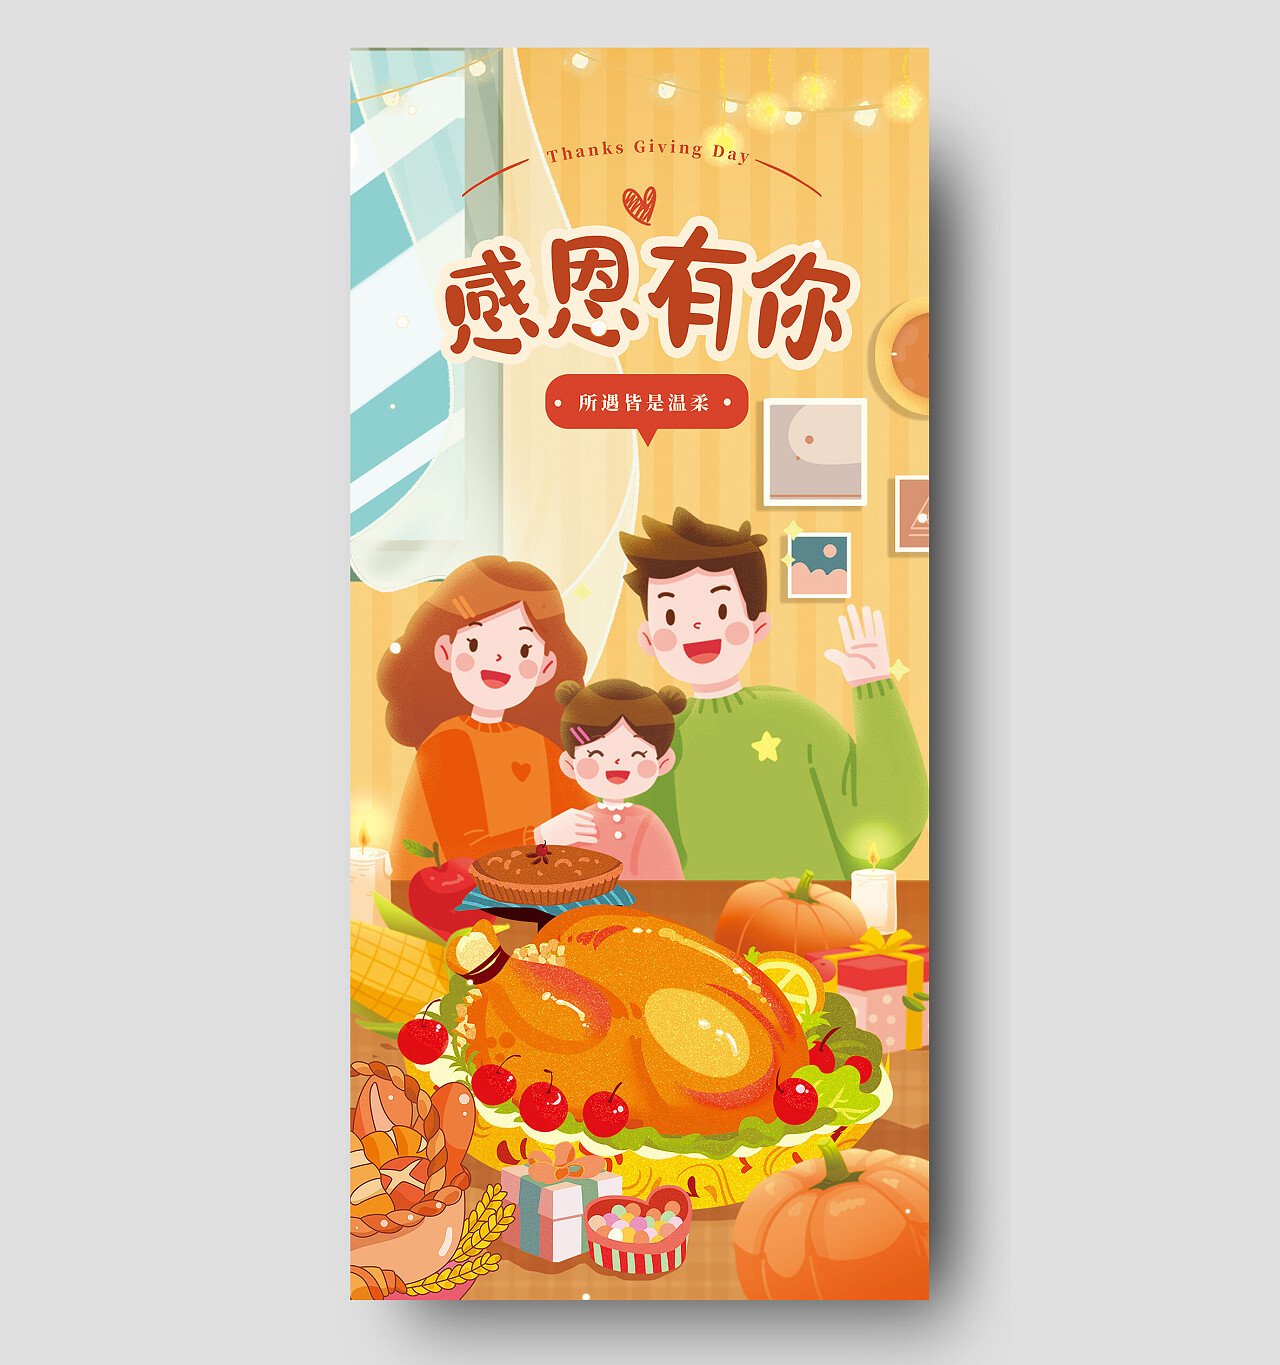 手绘插画一家三口感恩节大餐感恩有你感恩节手机宣传海报节日